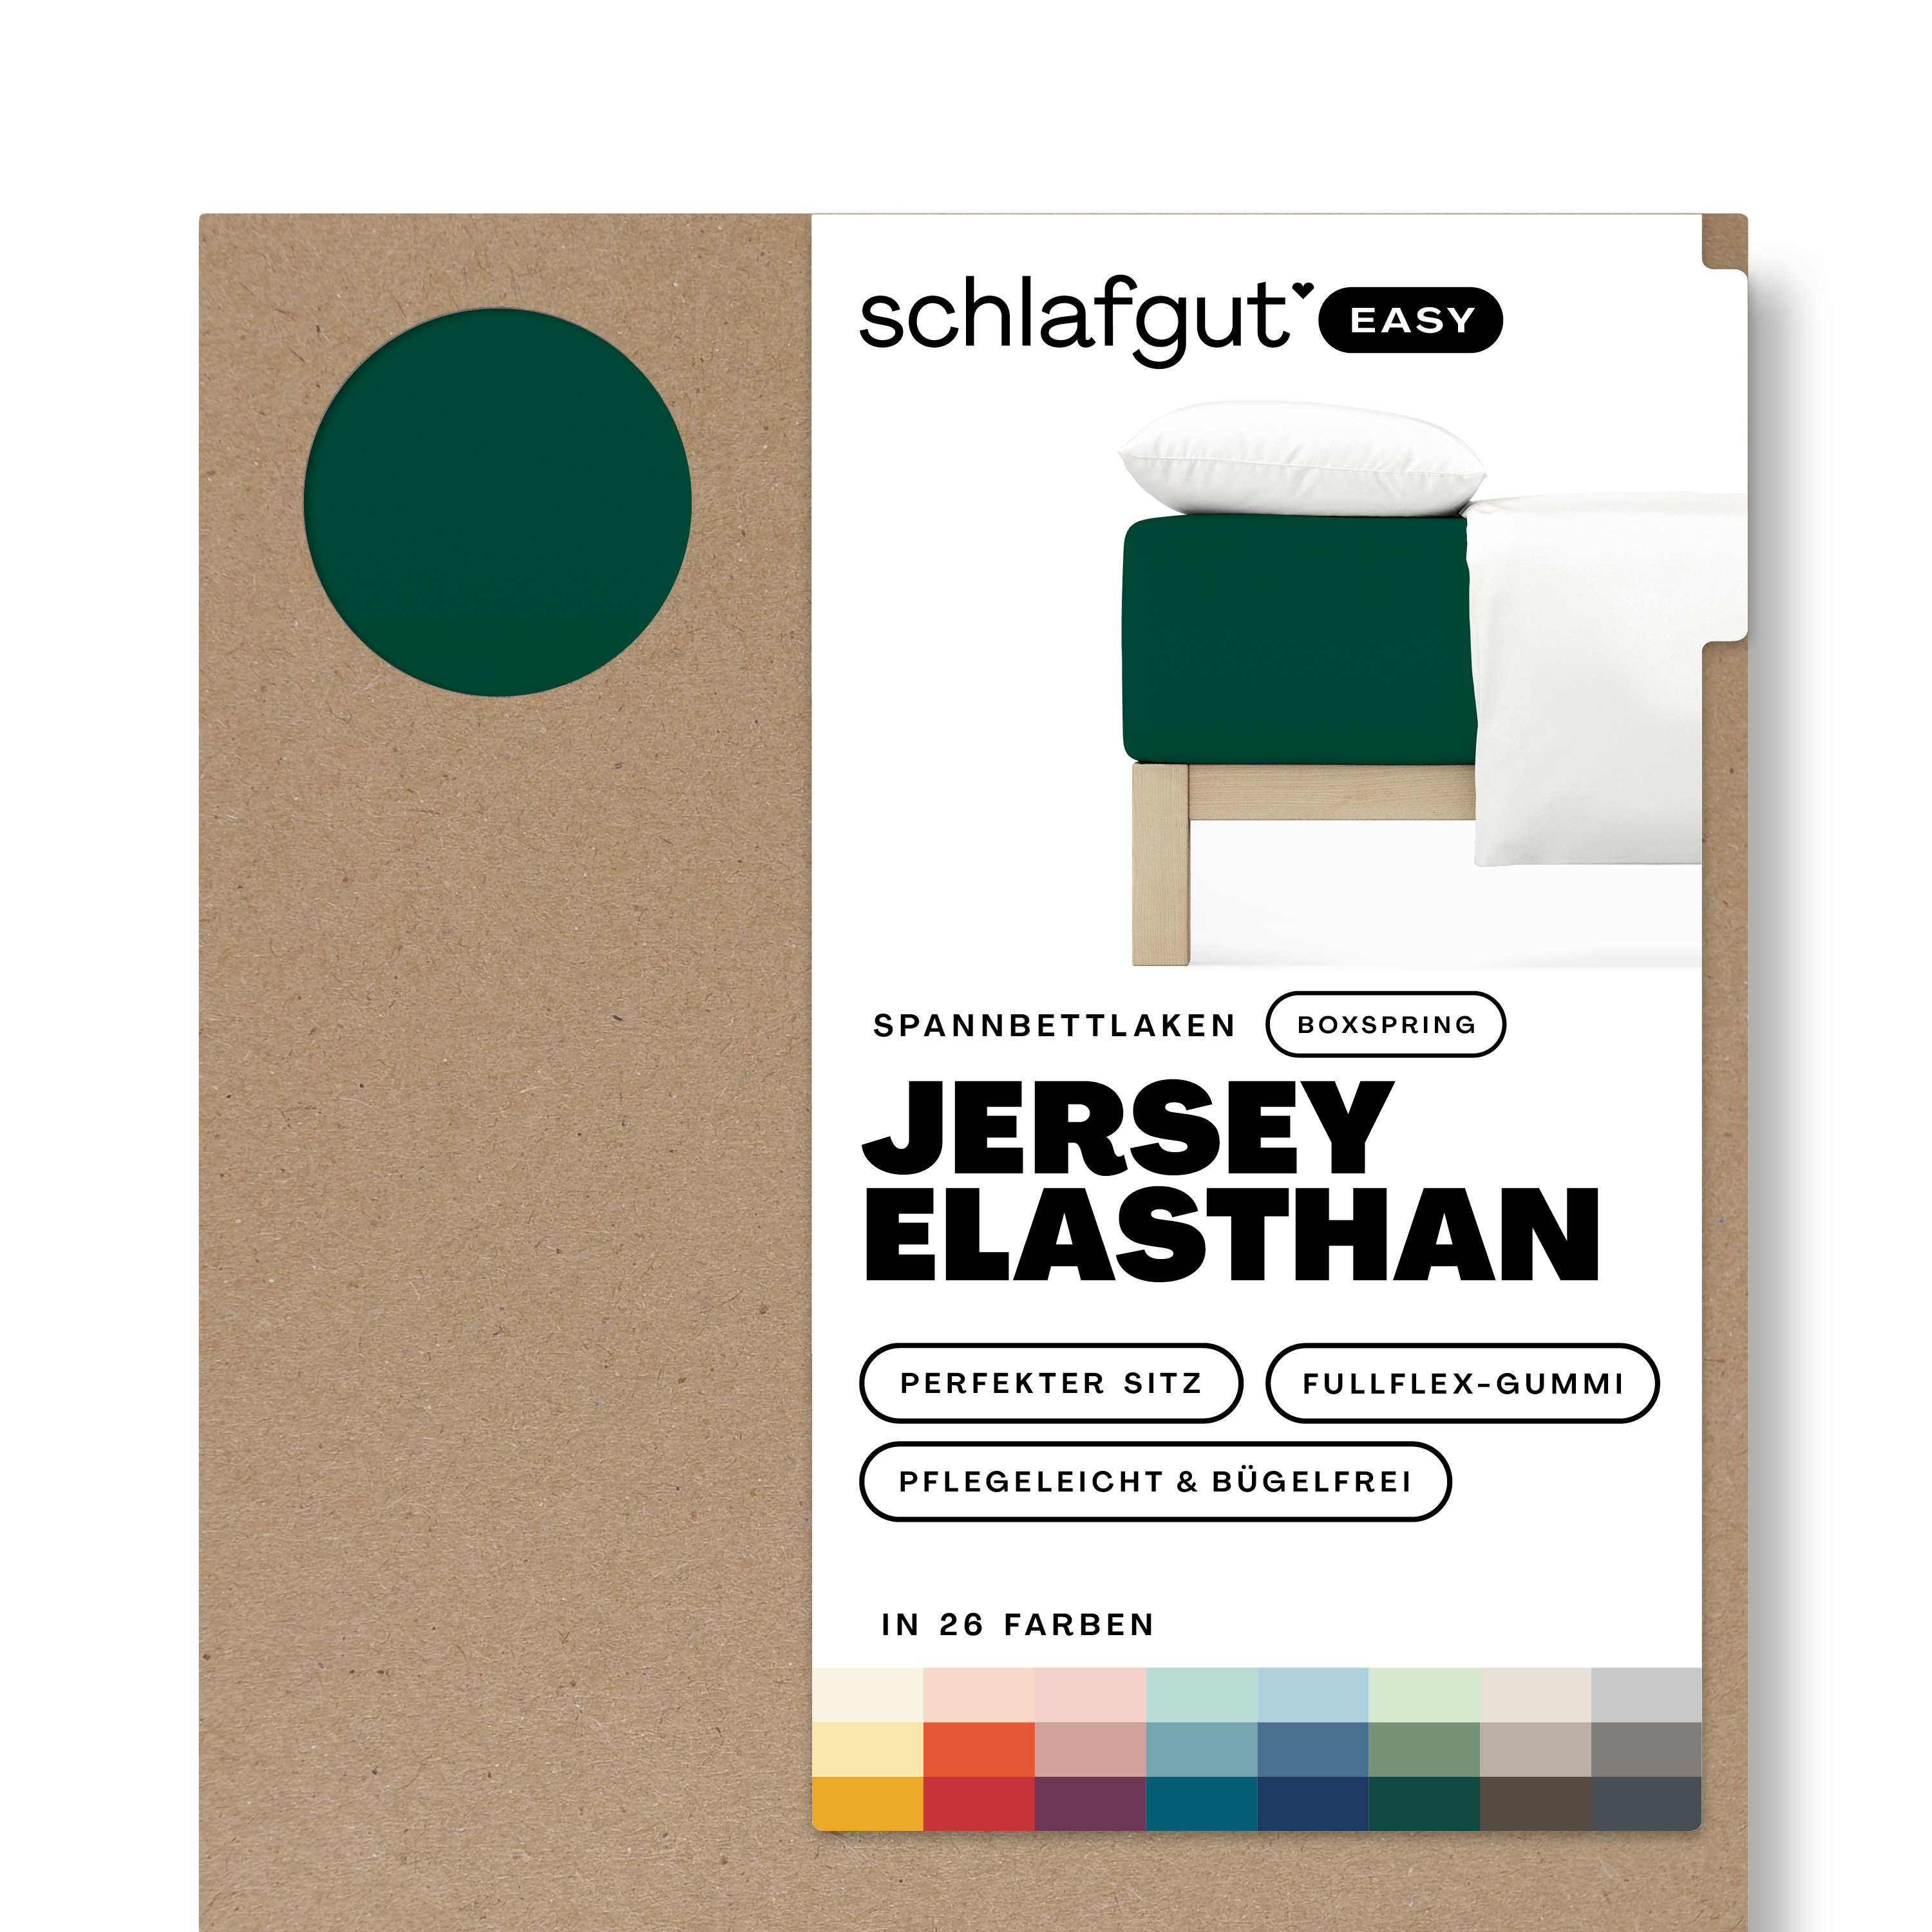 Das Produktbild vom Spannbettlaken der Reihe Easy Elasthan Boxspring in Farbe green deep von Schlafgut